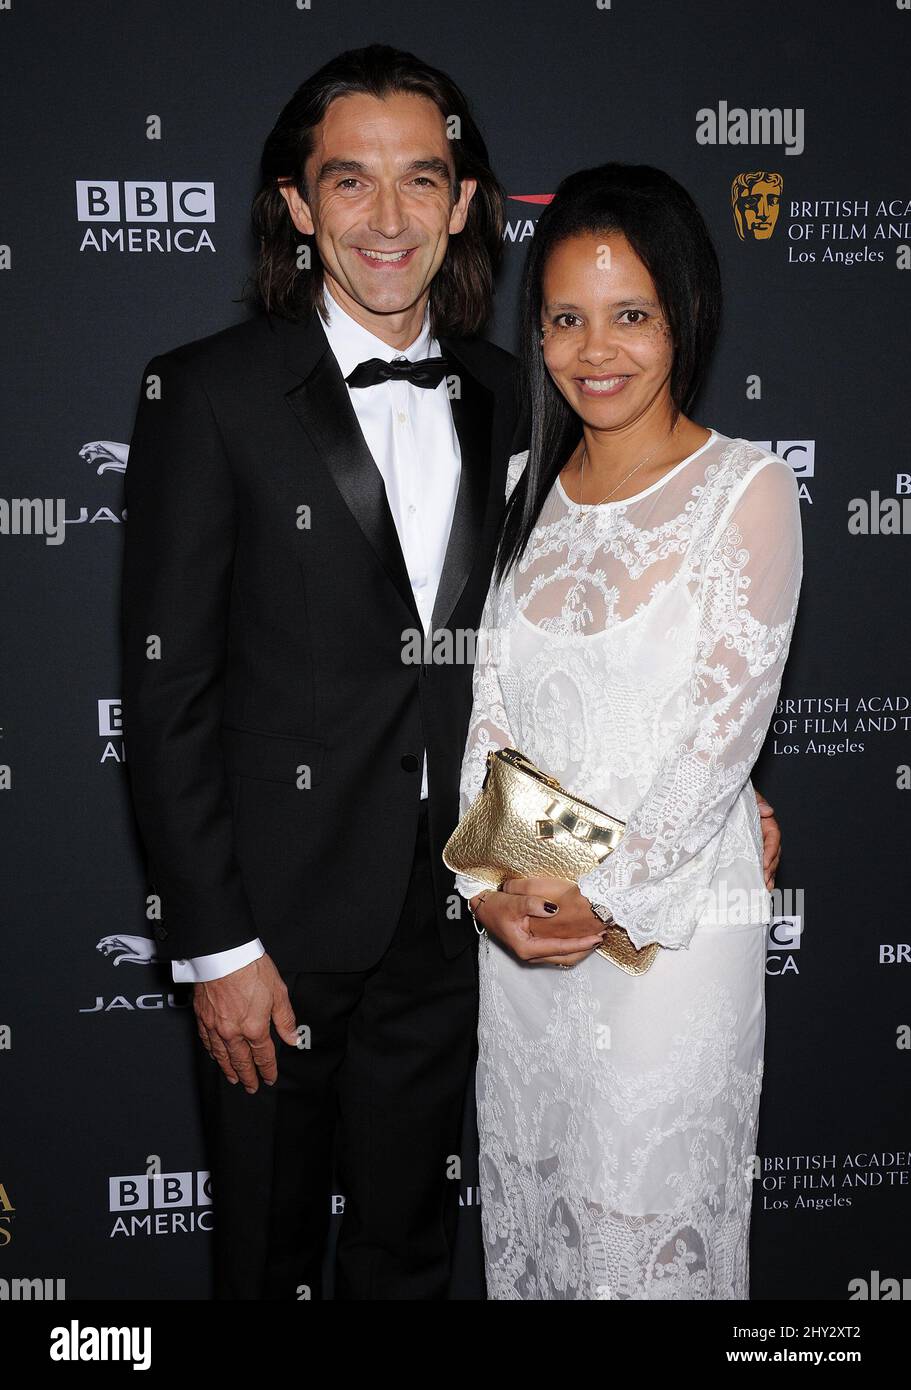 Justin Chadwick & Michelle attends the BAFTA LA Jaguar Britannia Awards 2013 at Hilton Hotel, Los Angeles. Stock Photo